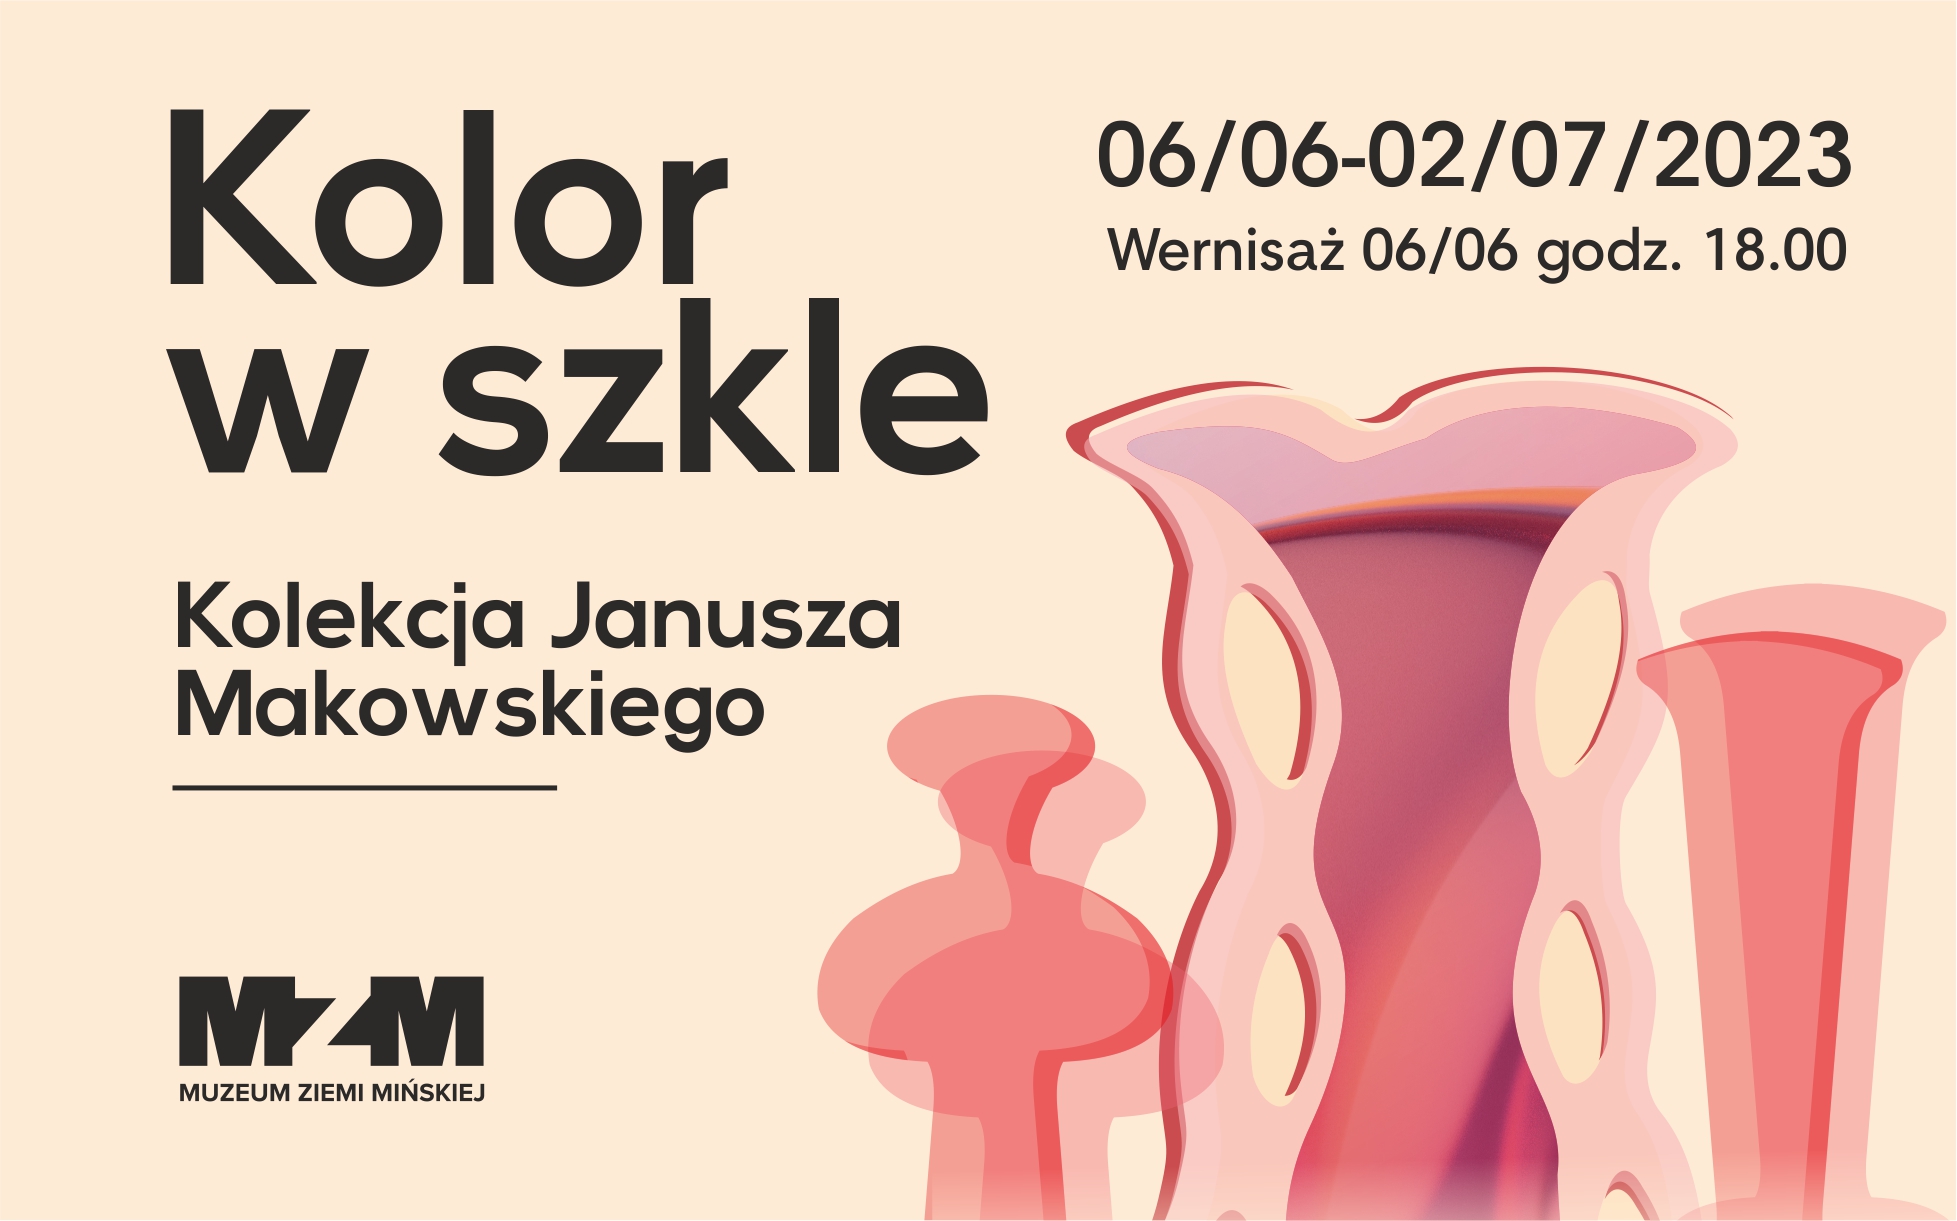 Kolor w szkle. Kolekcja Janusza Makowskiego.